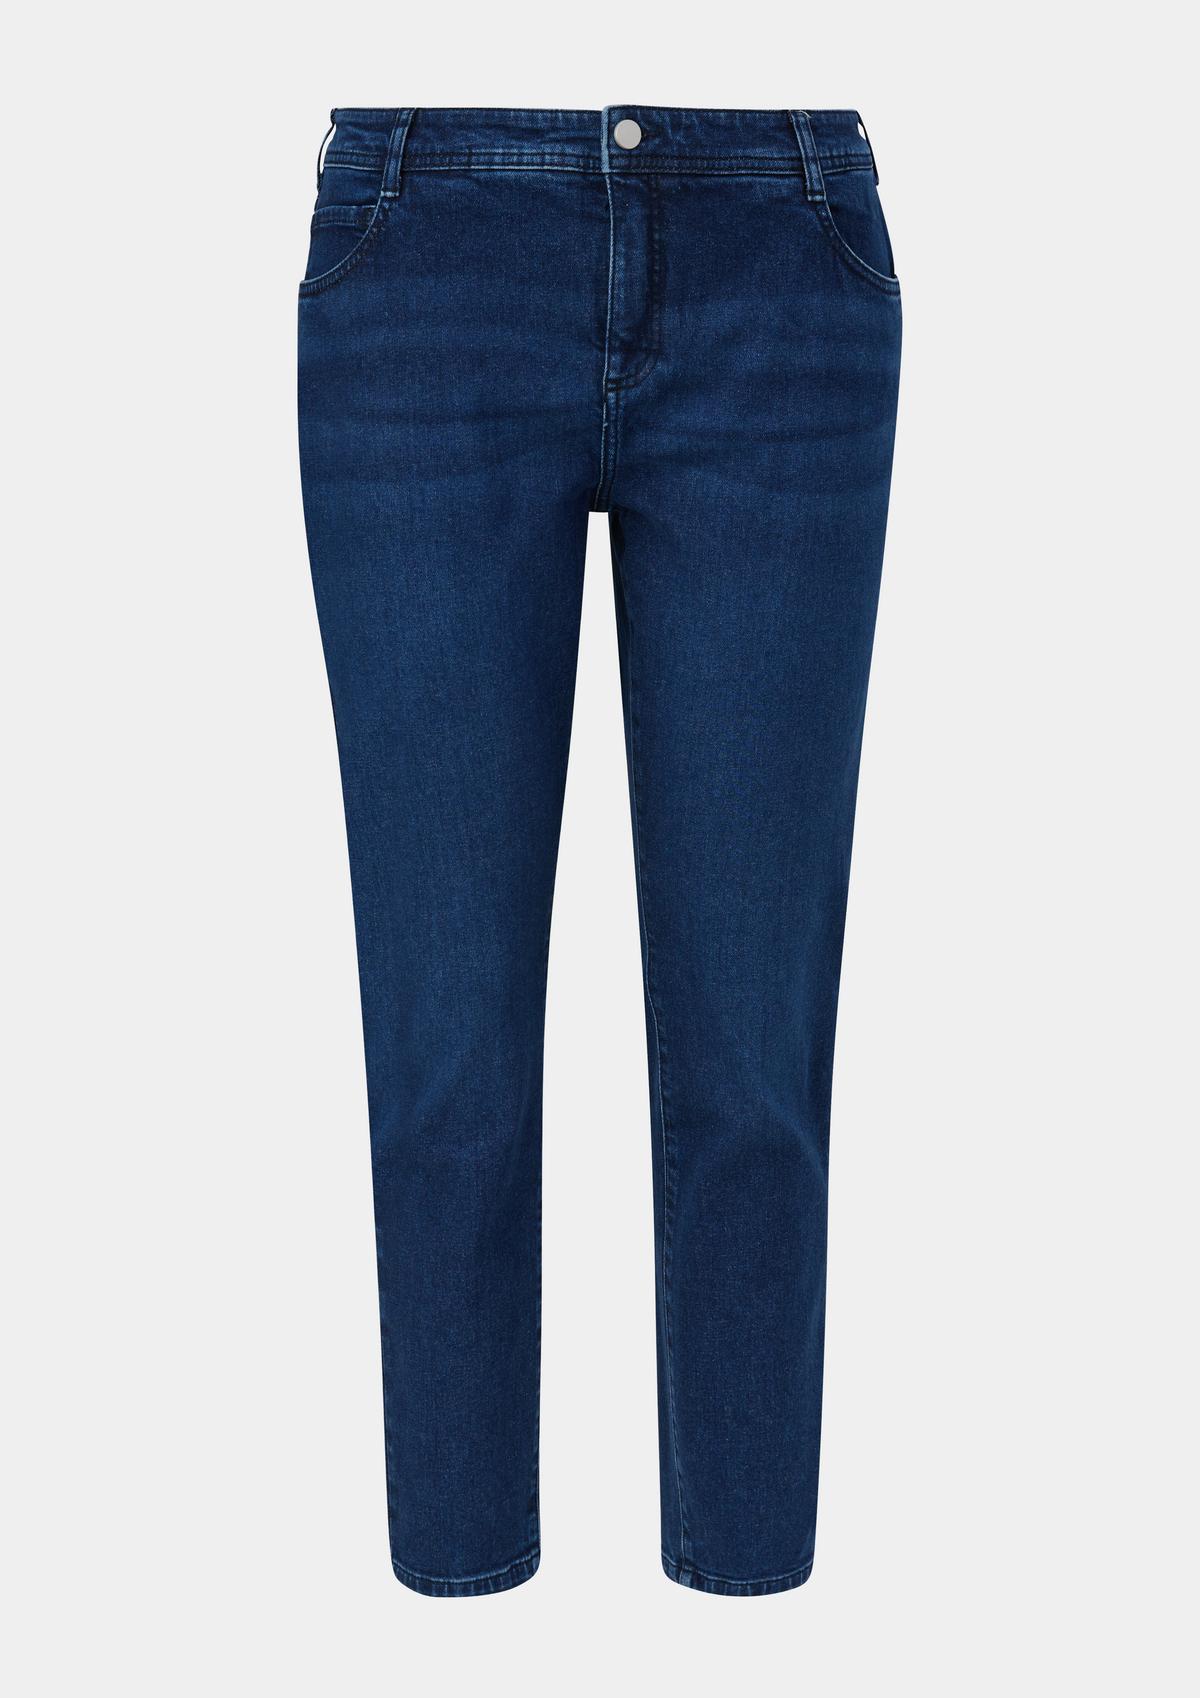 Jeans / skinny fit / mid rise / skinny leg / five-pocket design - blue | s. Oliver